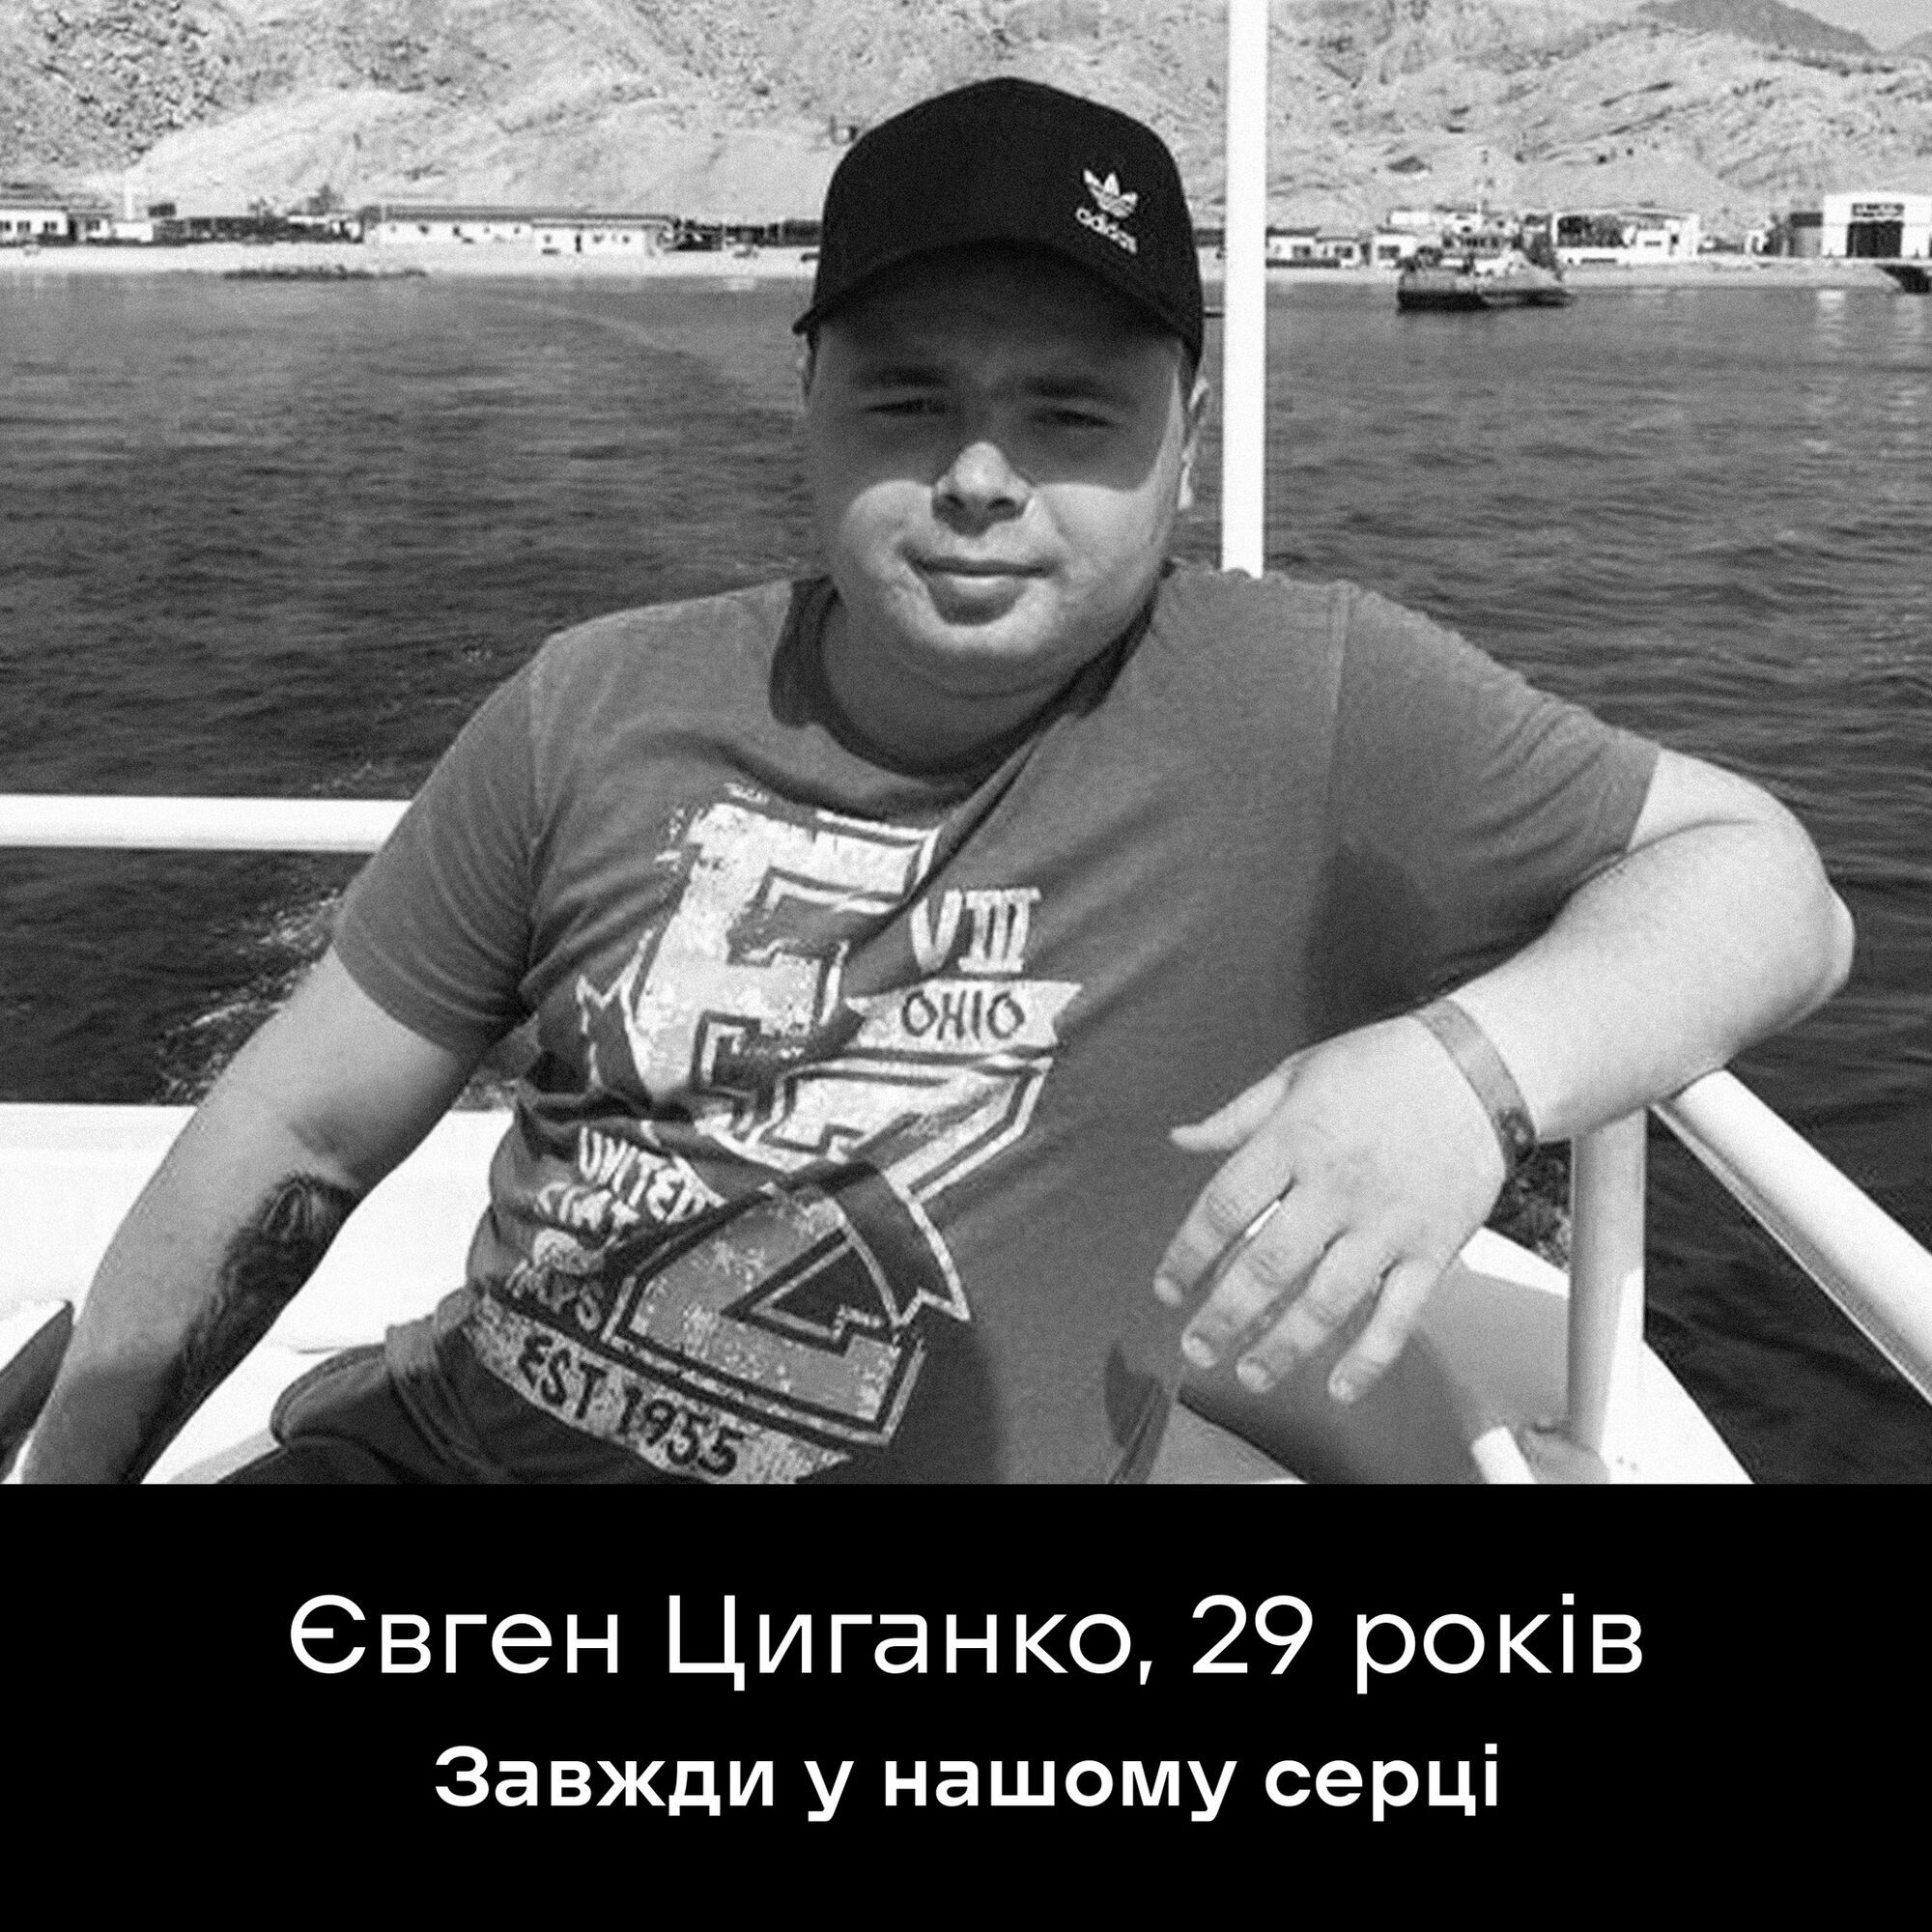 Выросло число жертв ракетного удара РФ по терминалу "Новой почты" в Харьковской области: в больнице скончался 29-летний мужчина